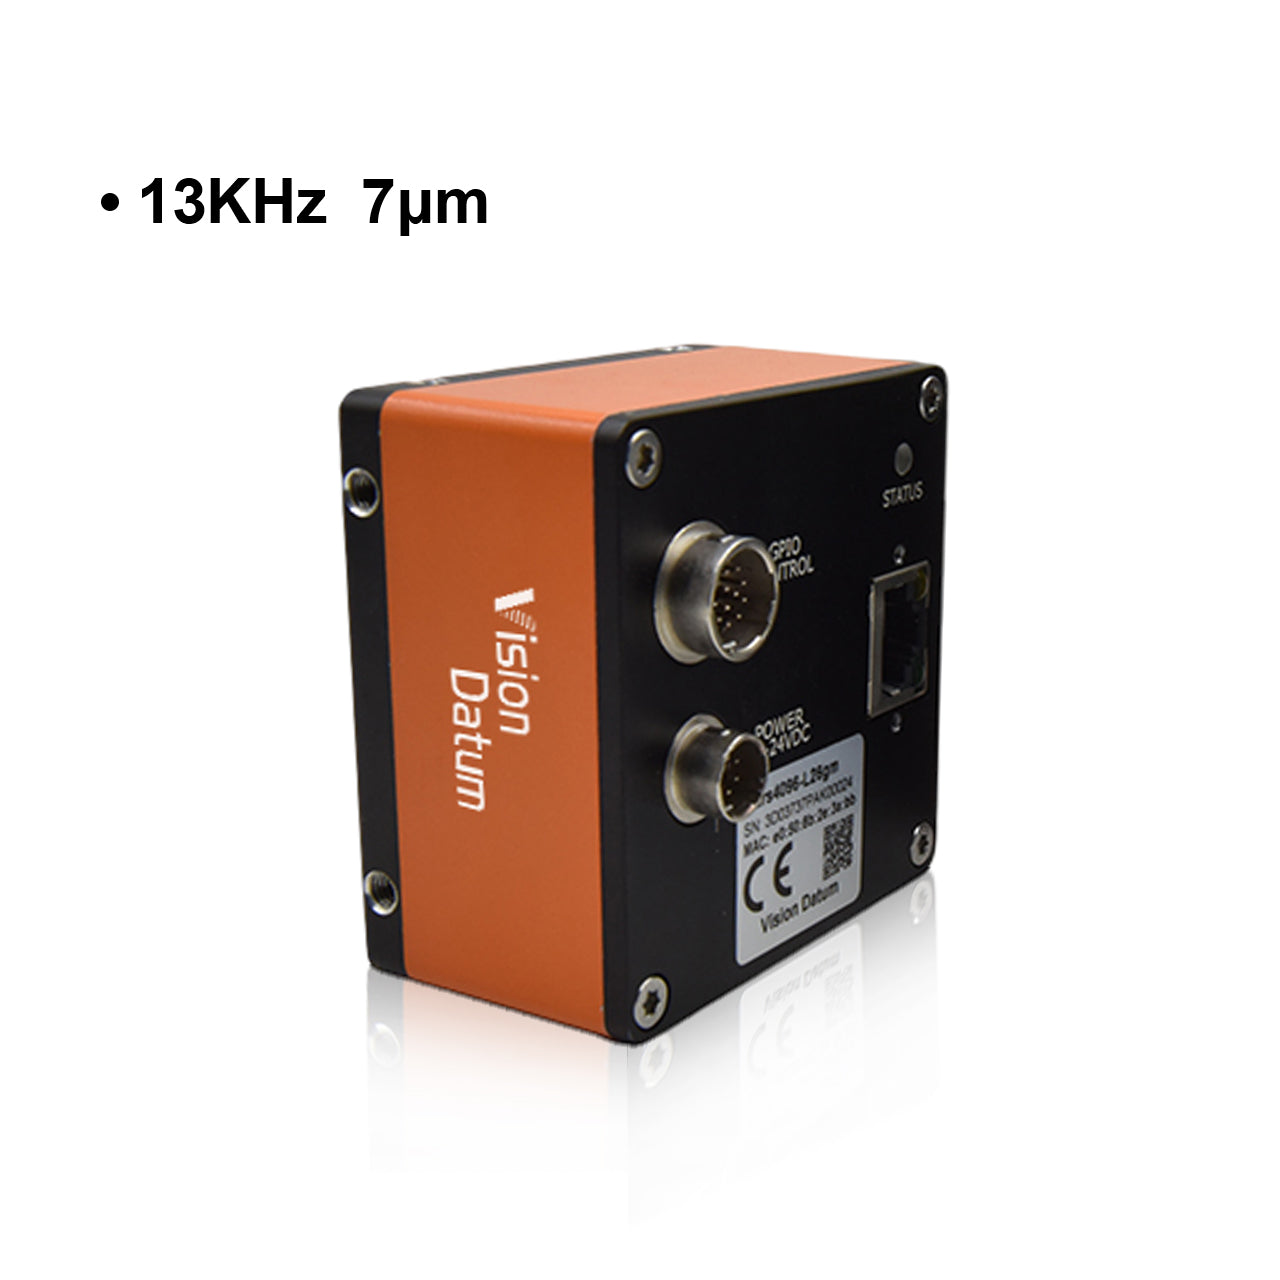 Камера линейного сканирования GigE с креплением M72, 8K, 13 кГц, 7 мкм 